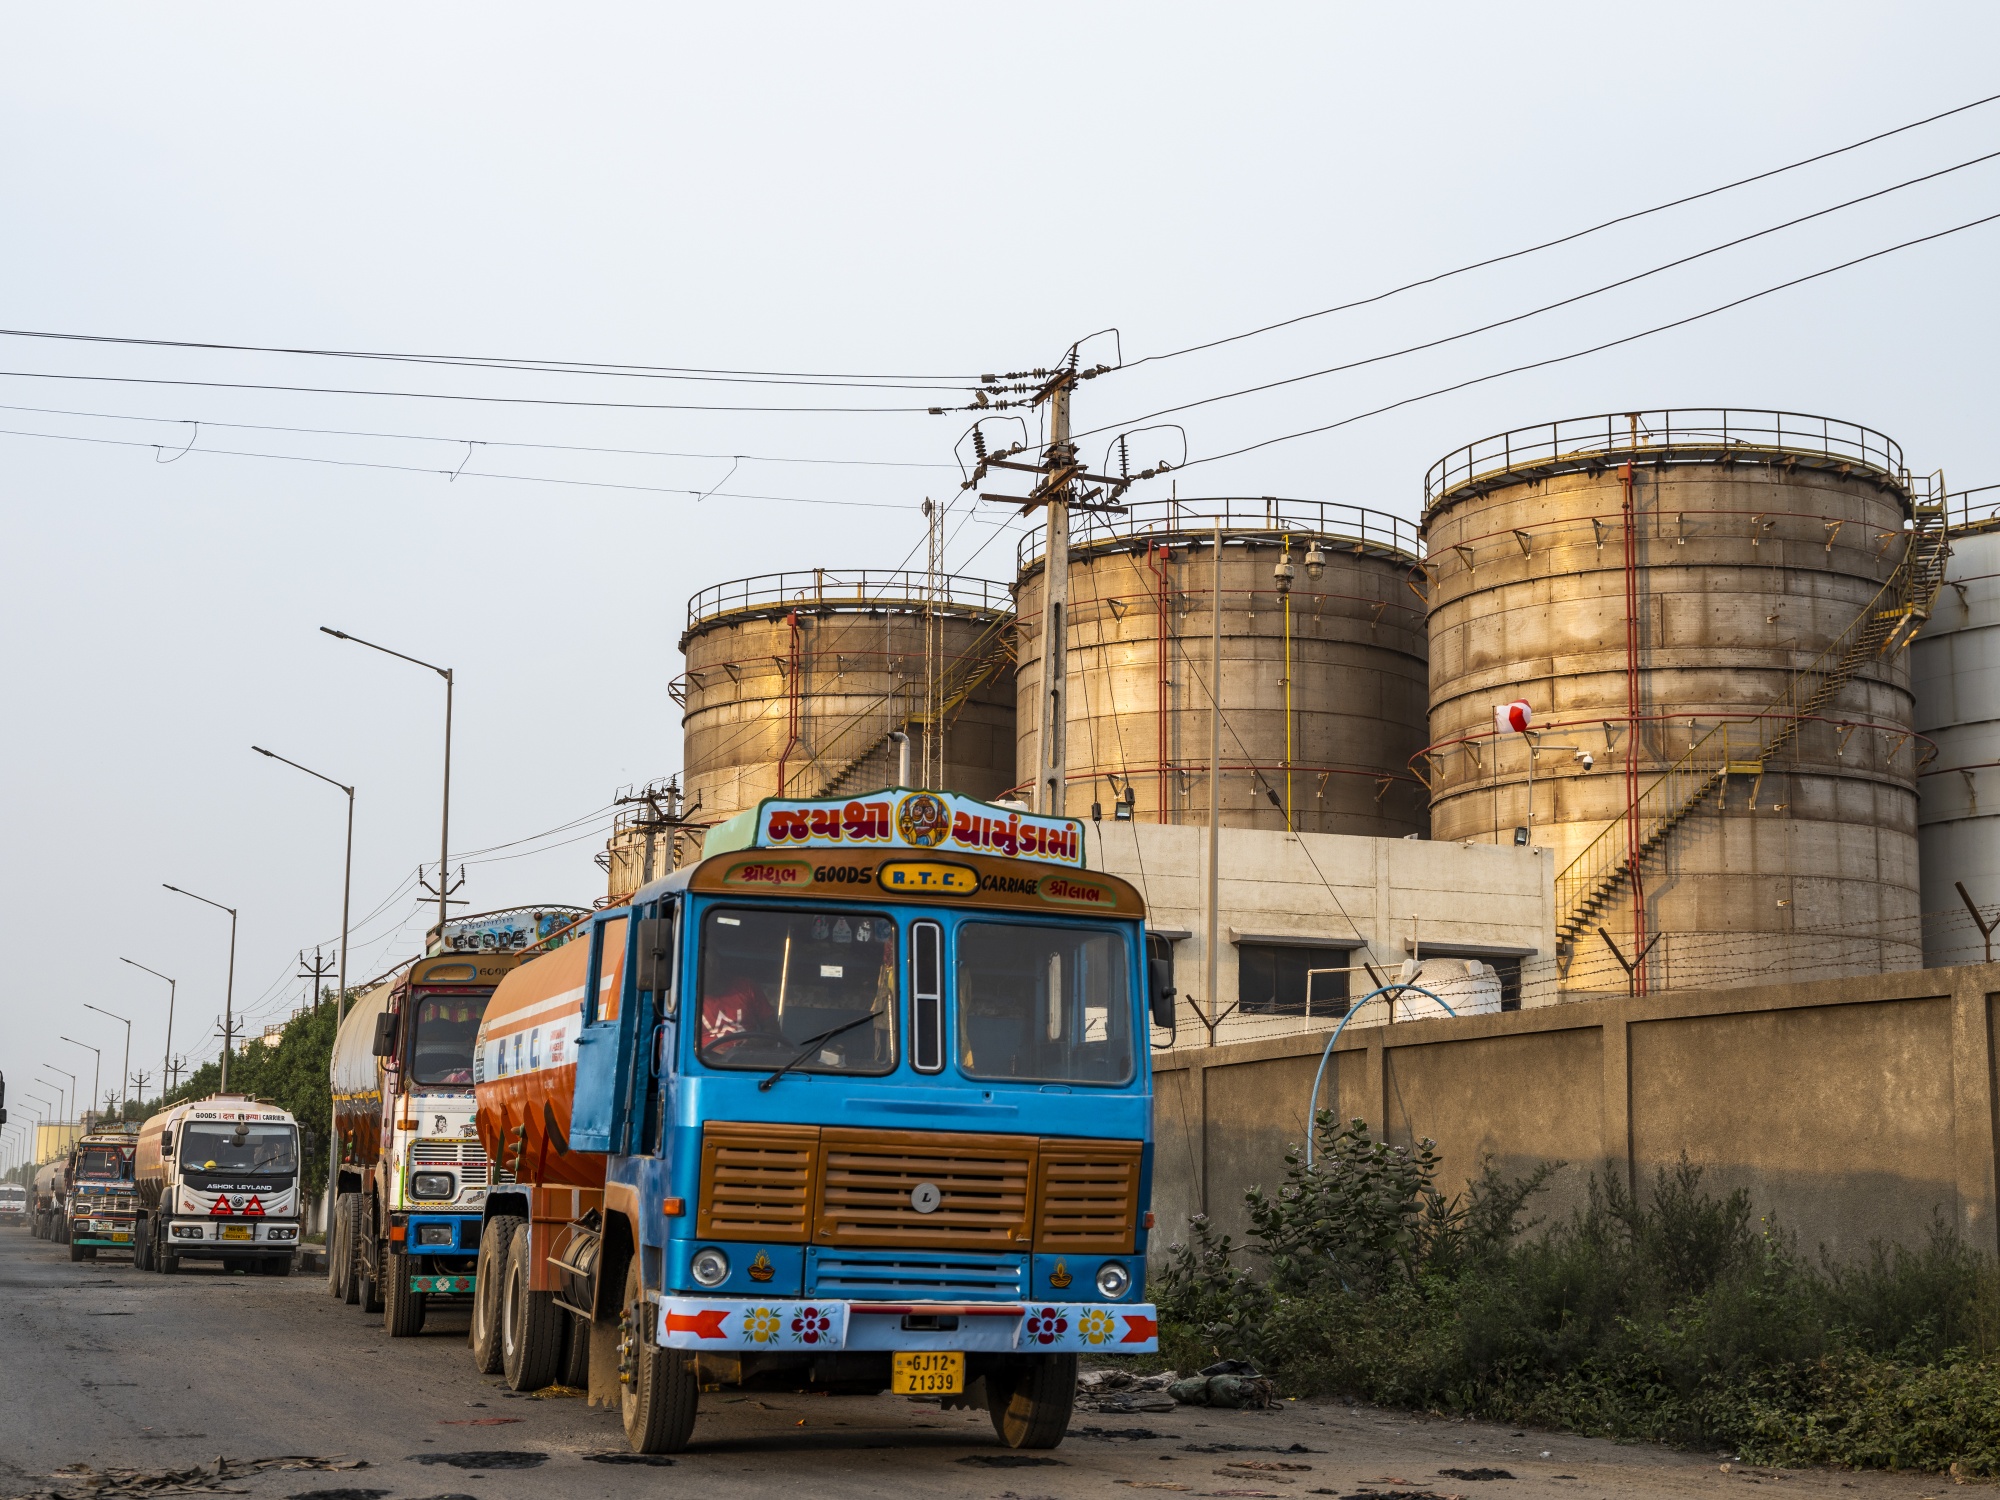 شاحنات تقف أمام خزانات نفطية في الهند